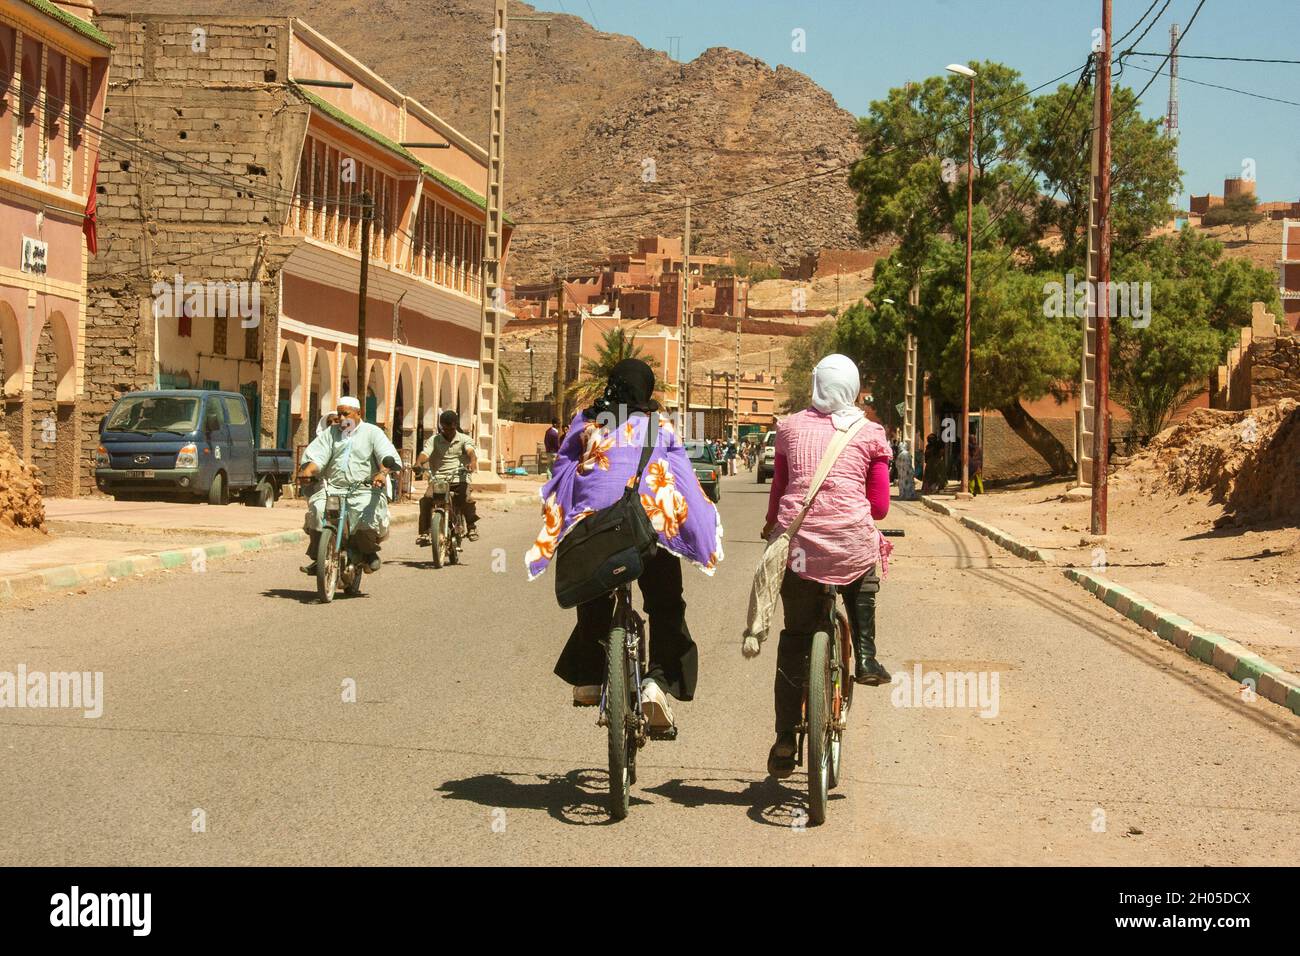 Trafic de bicyclettes et de scooters dans un village rural isolé au Maroc Banque D'Images